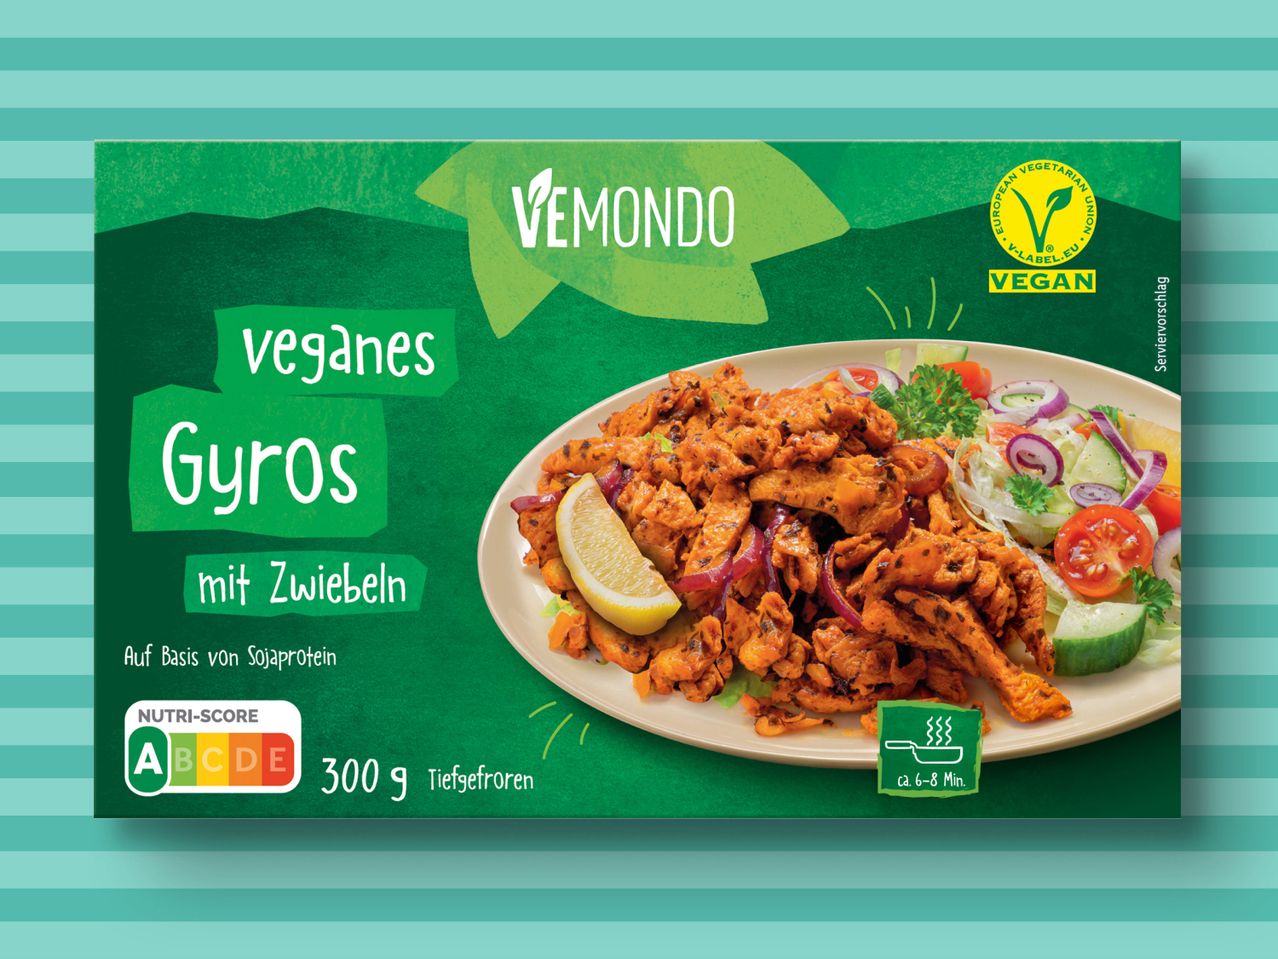 Veganes Gyros Vemondo